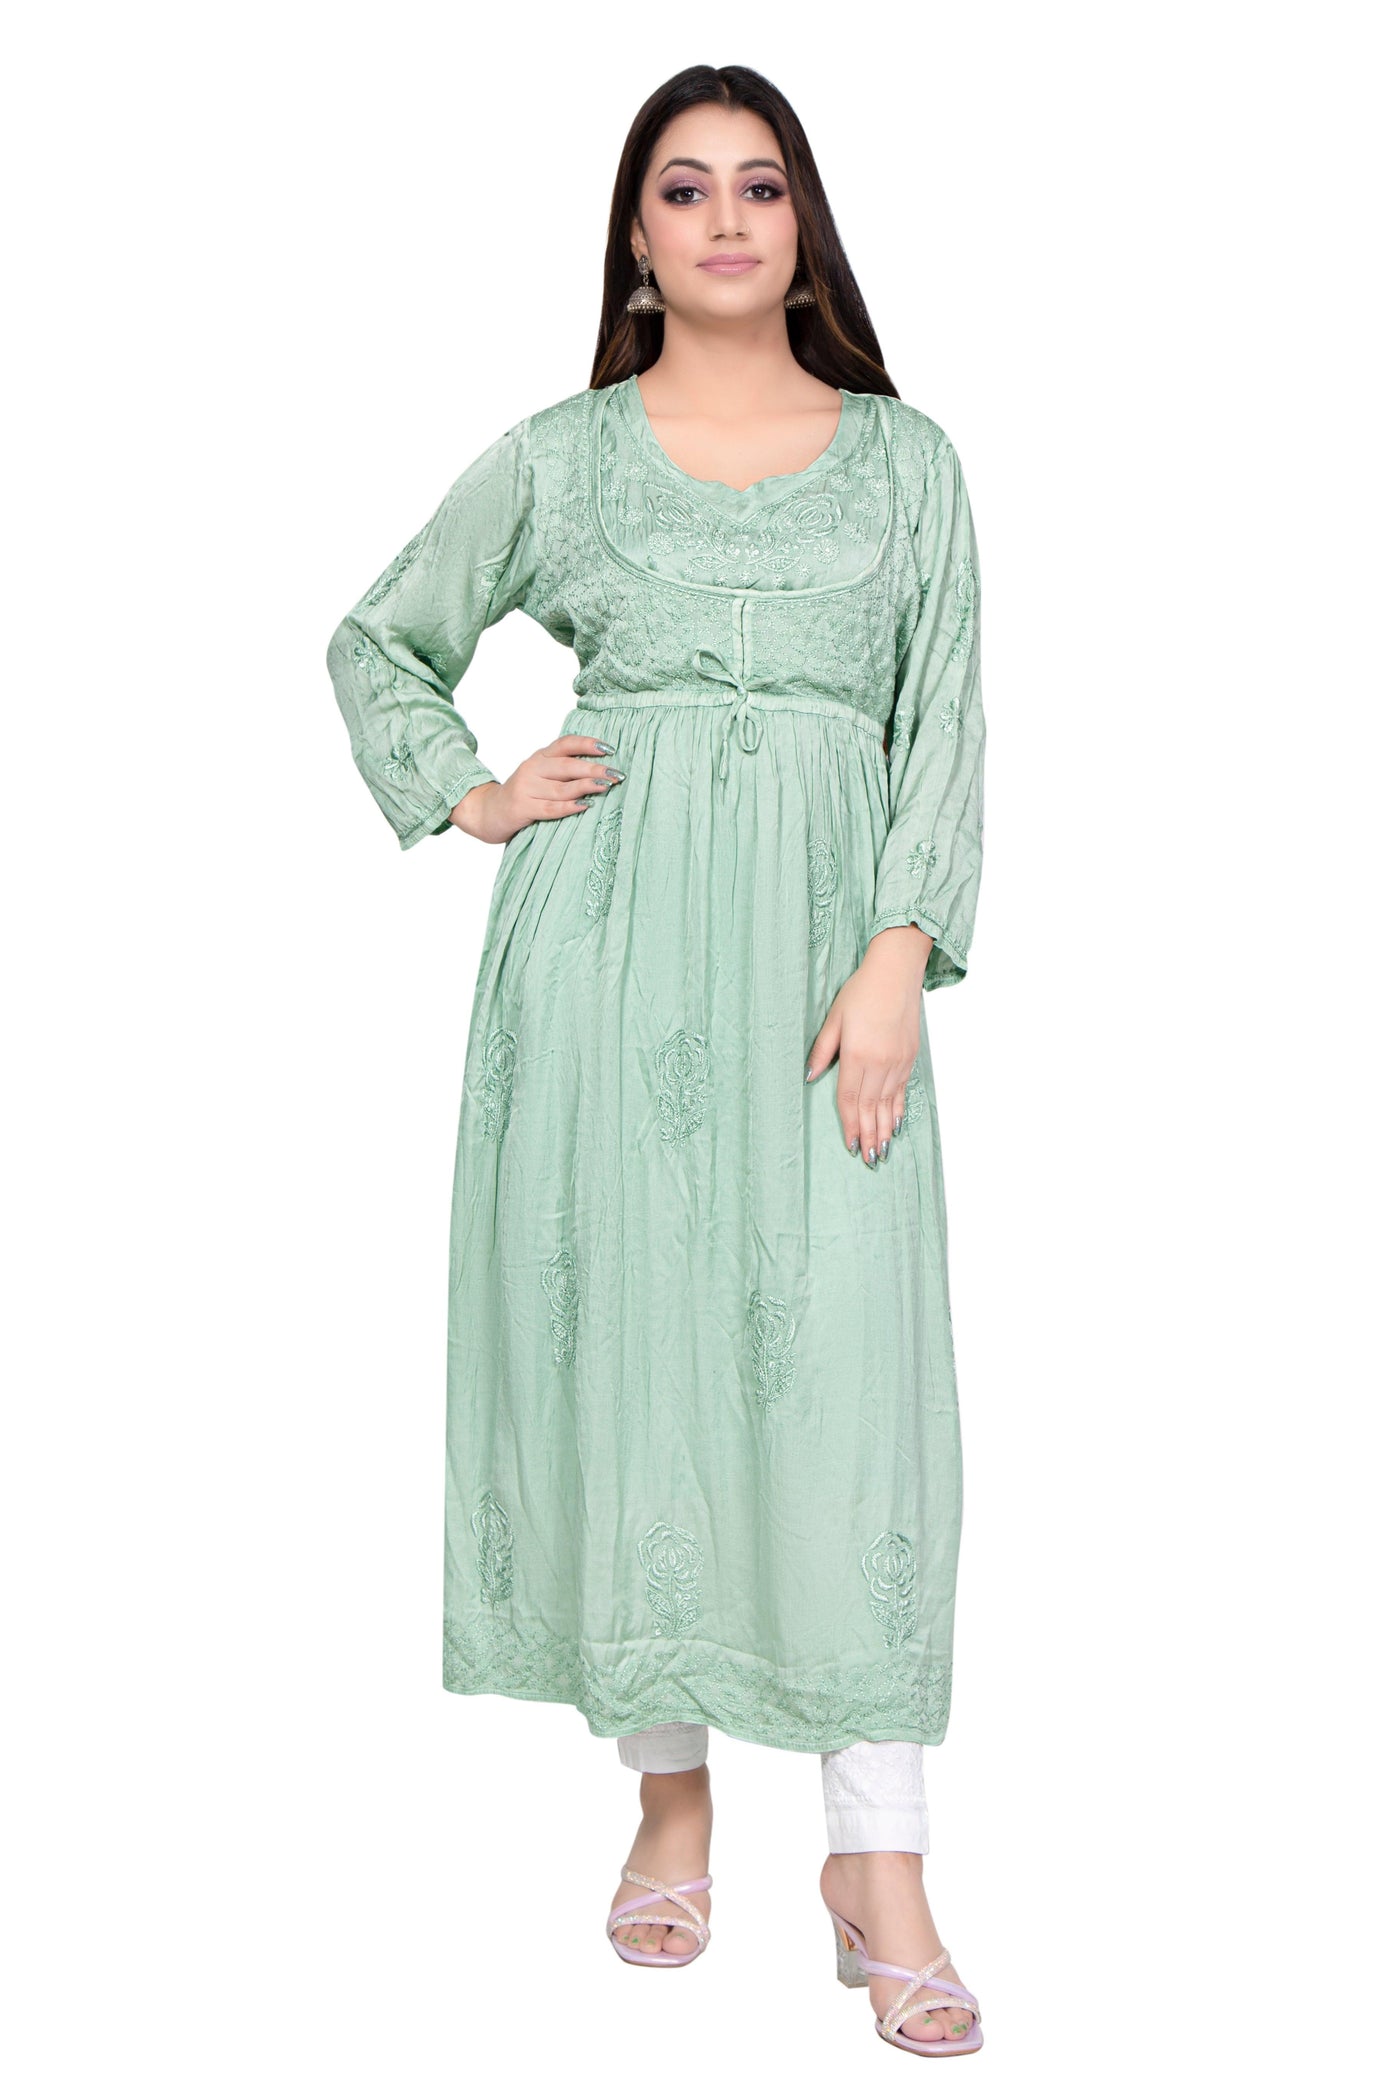 Almas Lifestyle Lucknowi Chikankari Green Modal Koti Style Long Gown - Almas Lifestyle